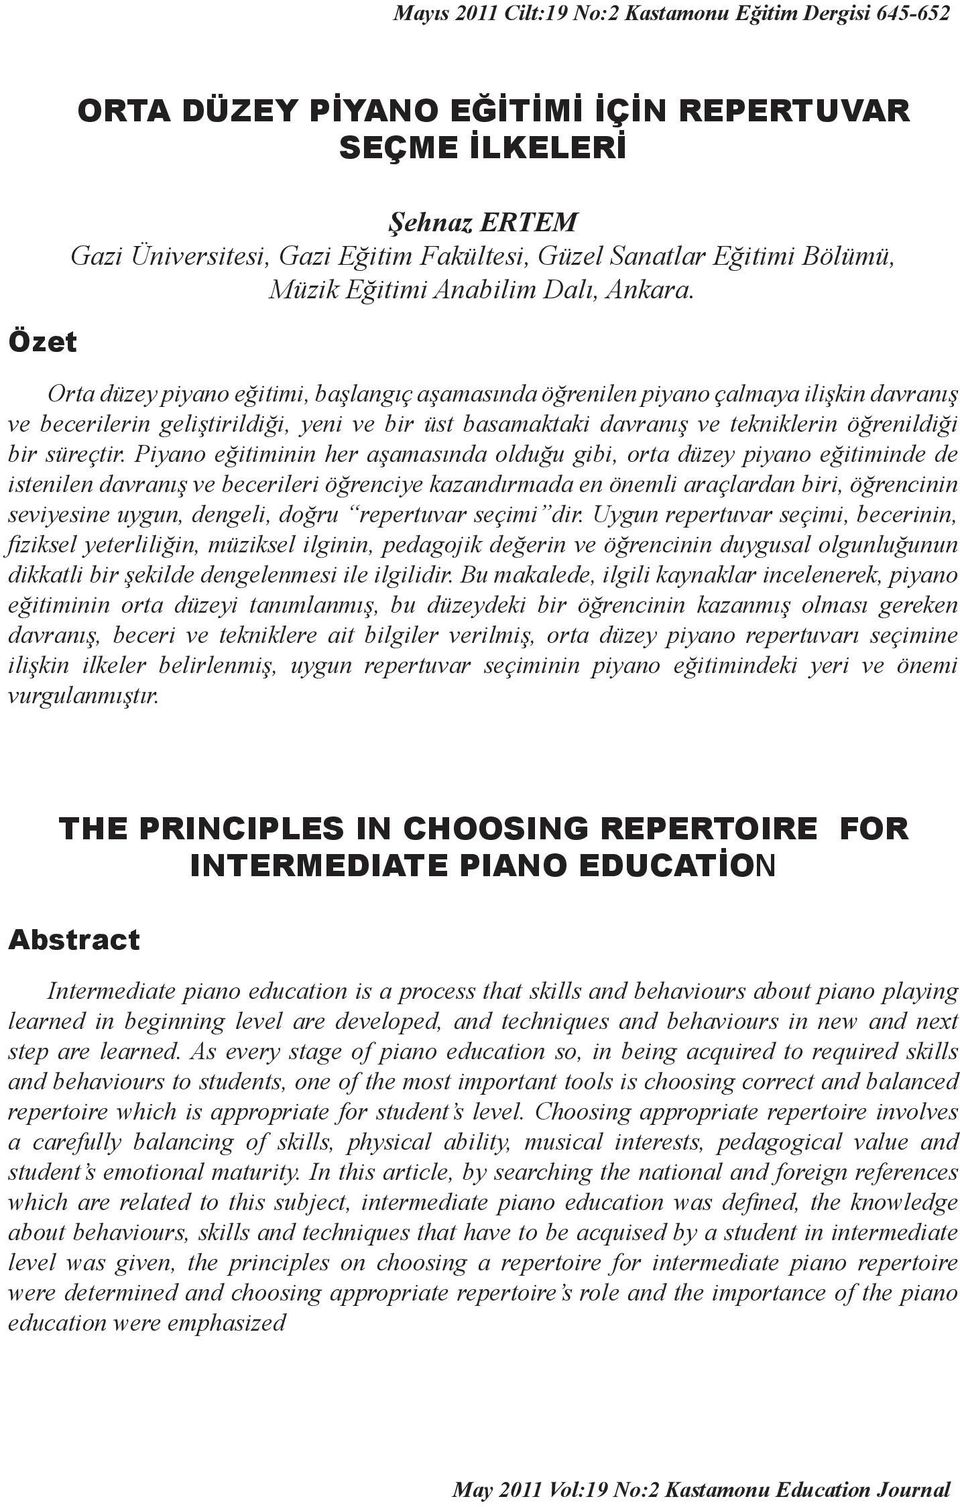 Orta düzey piyano eğitimi, başlangıç aşamasında öğrenilen piyano çalmaya ilişkin davranış ve becerilerin geliştirildiği, yeni ve bir üst basamaktaki davranış ve tekniklerin öğrenildiği bir süreçtir.